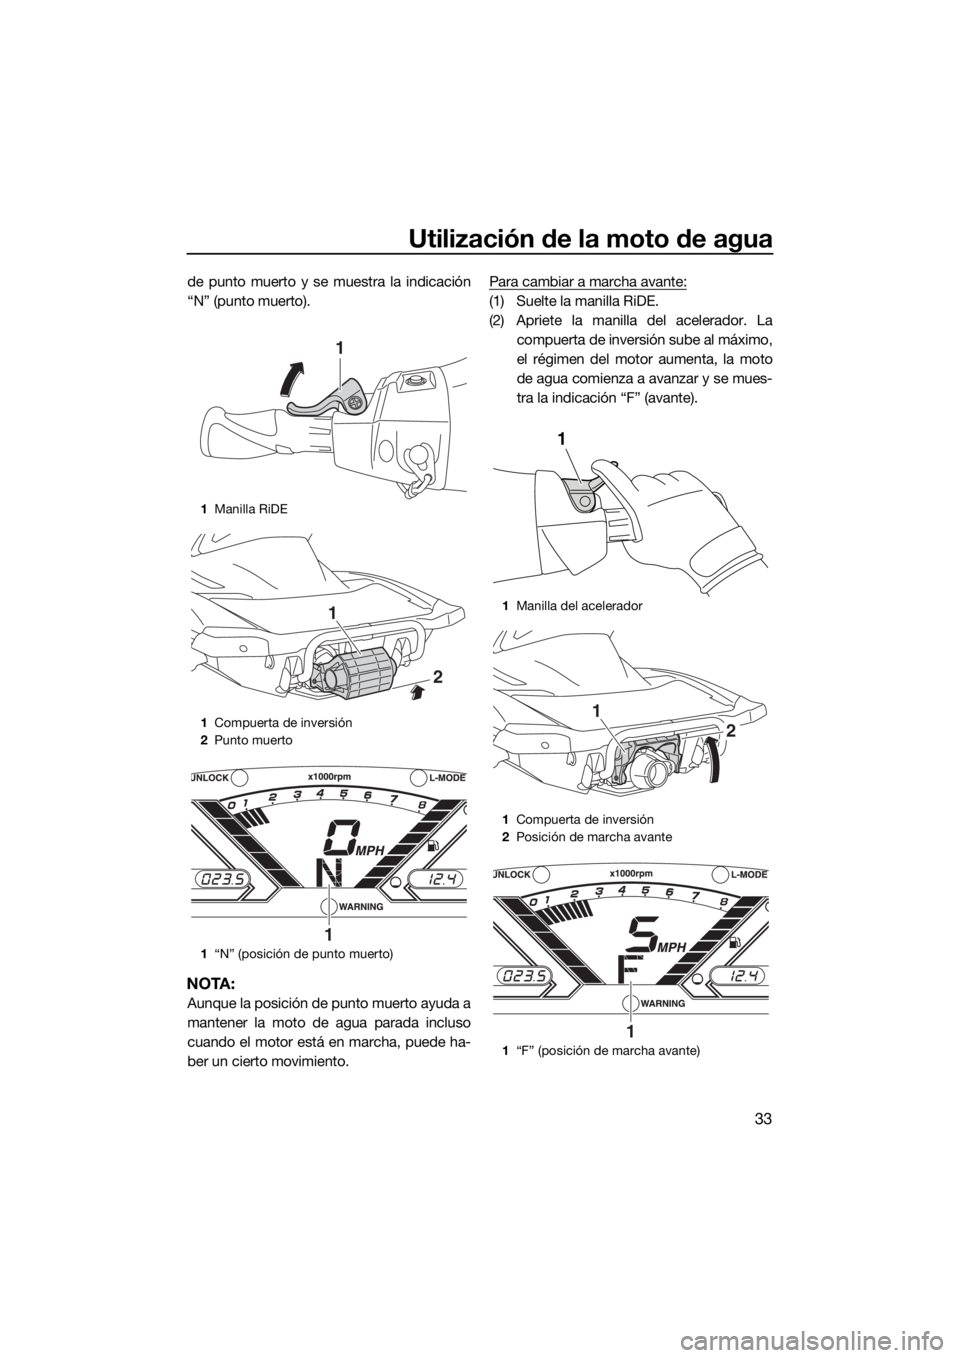 YAMAHA VX LIMITED 2017  Manuale de Empleo (in Spanish) Utilización de la moto de agua
33
de punto muerto y se muestra la indicación
“N” (punto muerto).
NOTA:
Aunque la posición de punto muerto ayuda a
mantener la moto de agua parada incluso
cuando 